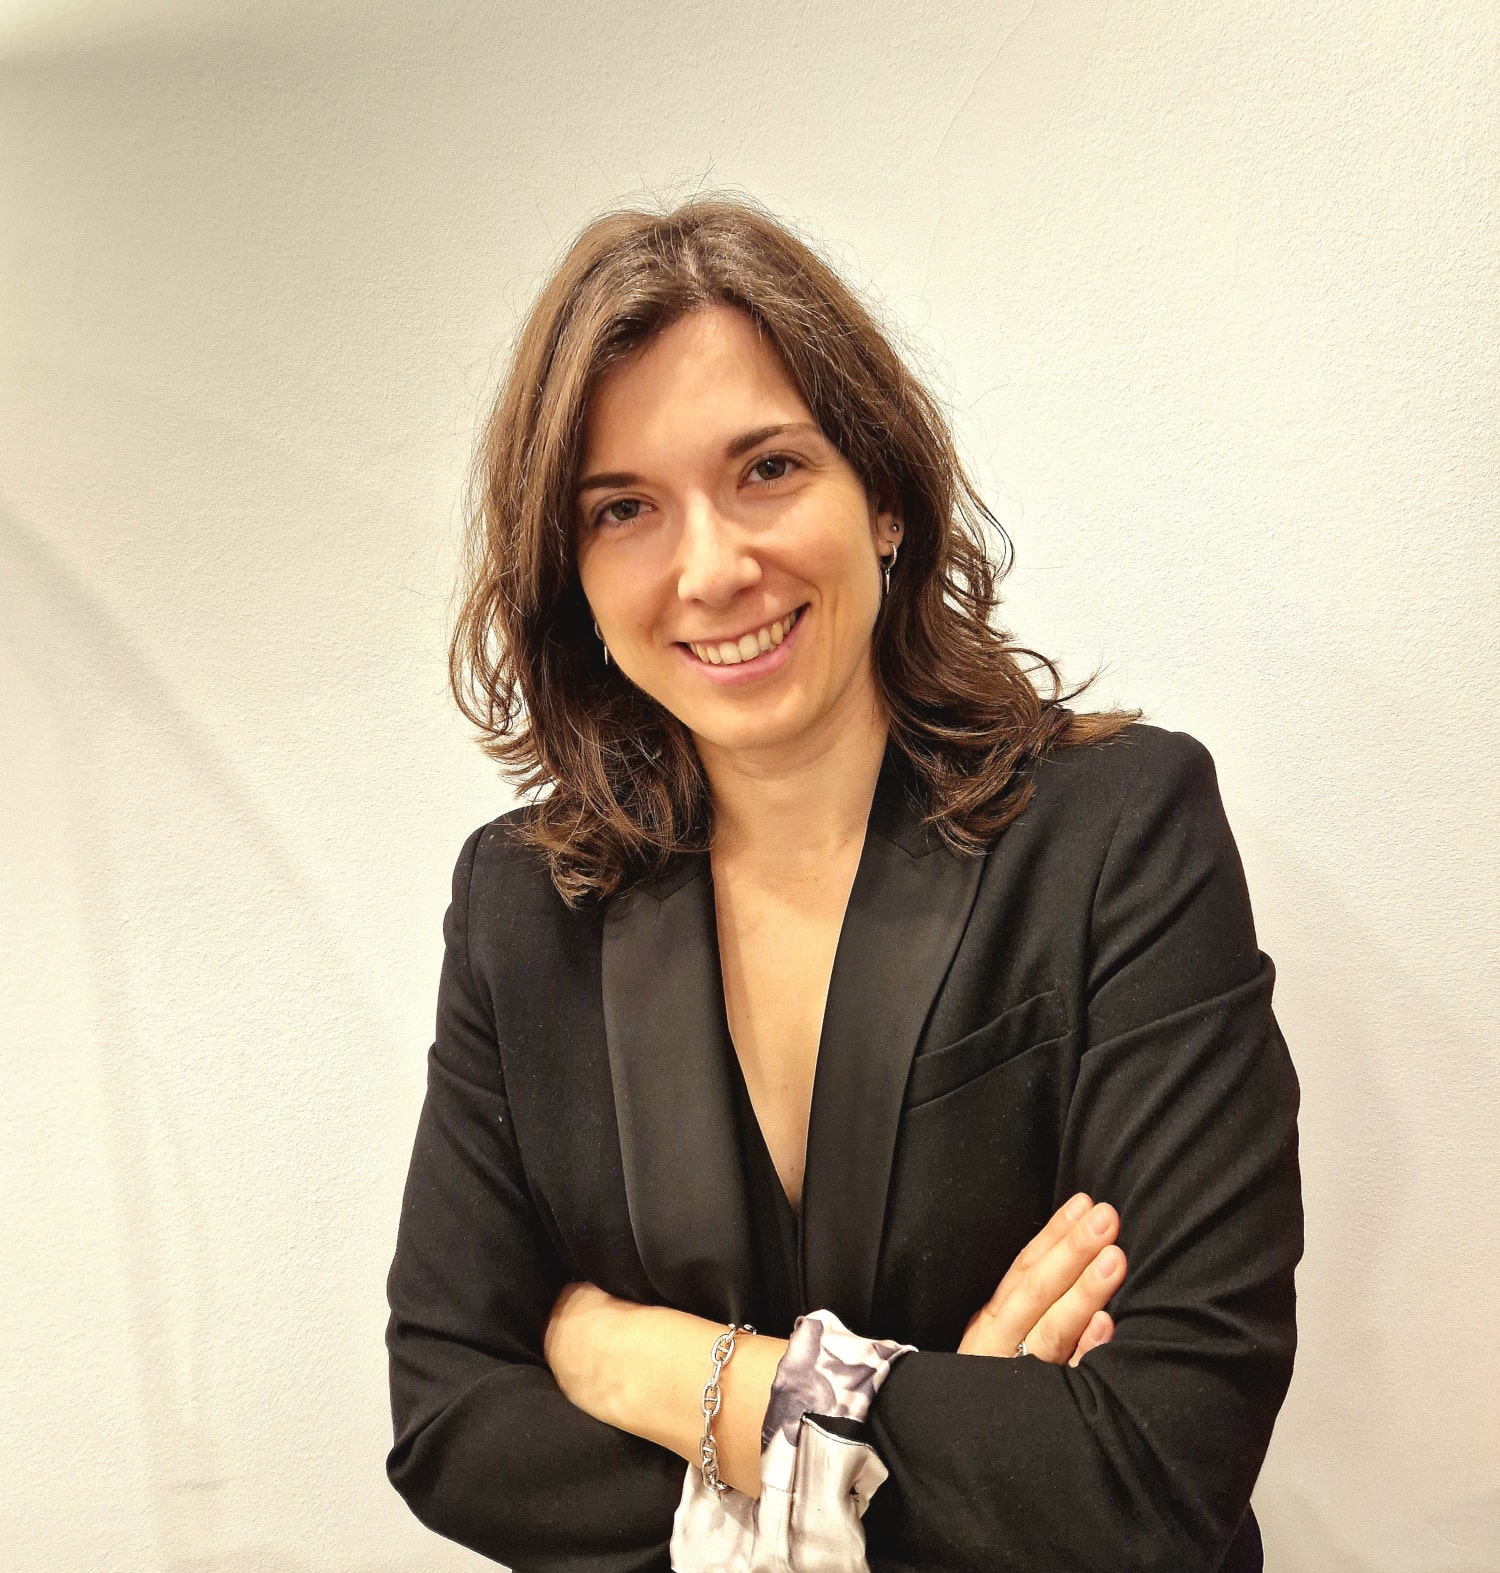 Ana Pérez